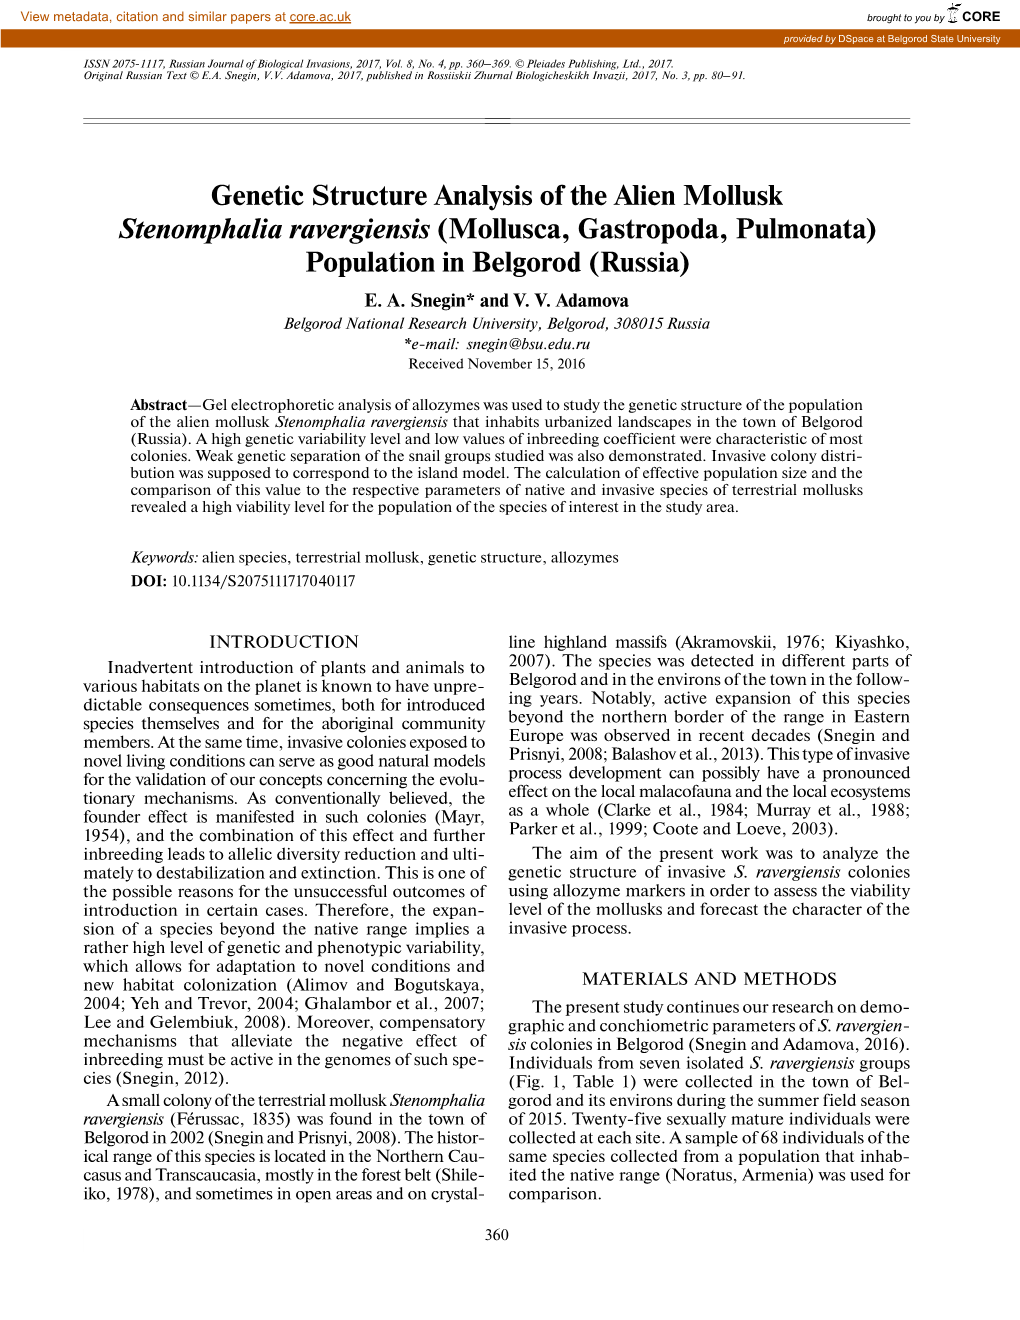 Genetic Structure Analysis of the Alien Mollusk Stenomphalia Ravergiensis (Mollusca, Gastropoda, Pulmonata) Population in Belgorod (Russia) E